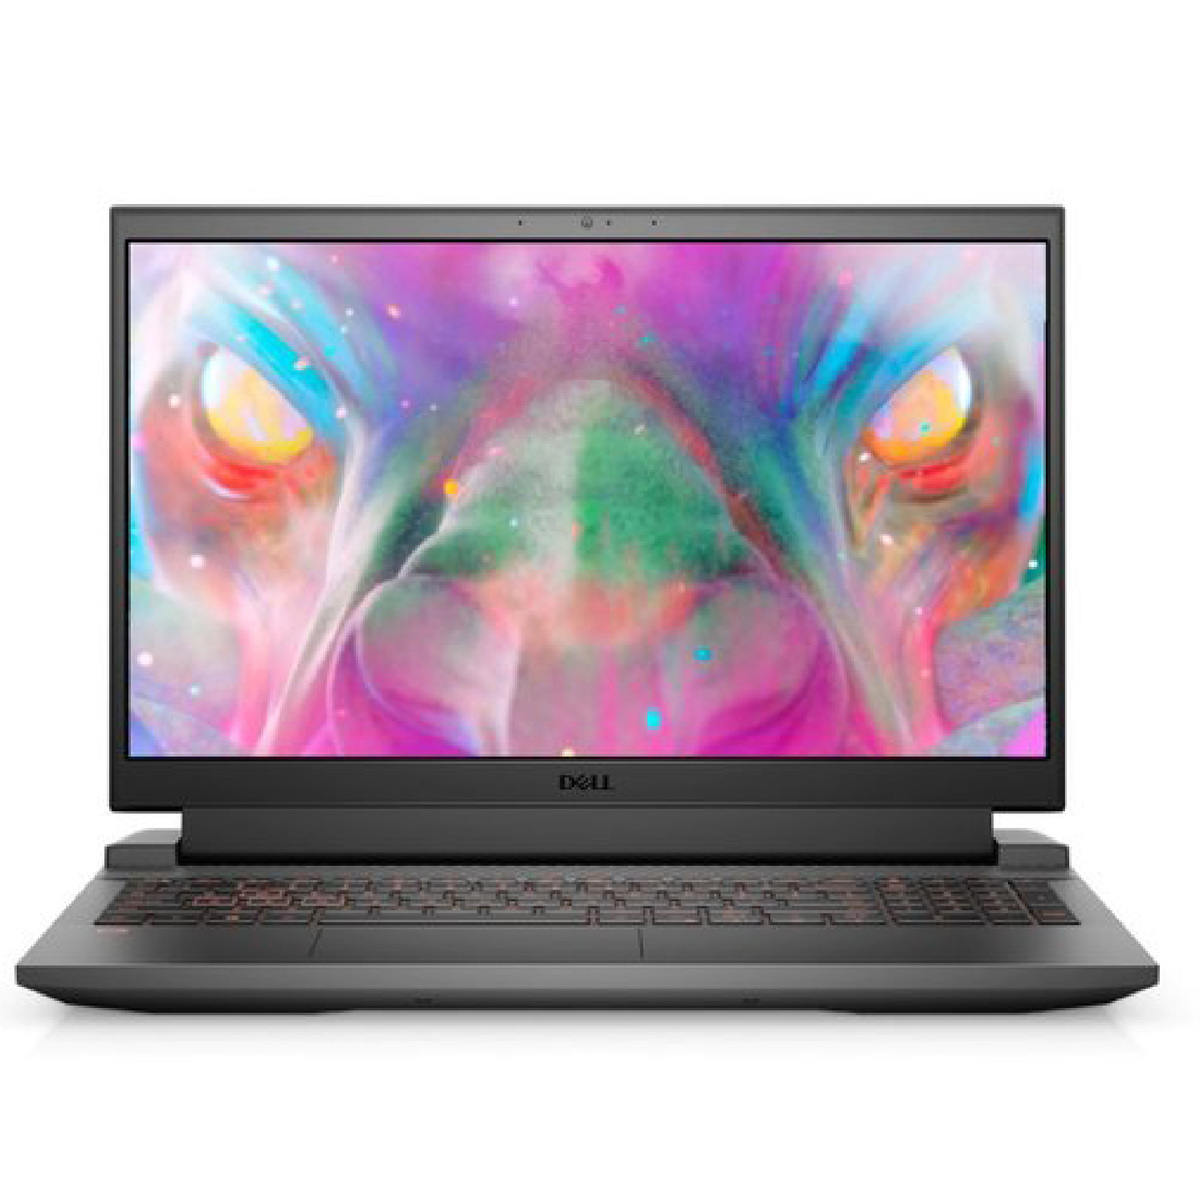 Dell G15 5515 Gaming Laptop (5515-G15-2101-GRY),AMD Ryzen(TM) 7 5800H,16GB RAM,512GB SSD,15.6"FHD,NVIDIA(R) GeForce RTX(TM) 3050 Ti 4GB,Windows 10,Grey